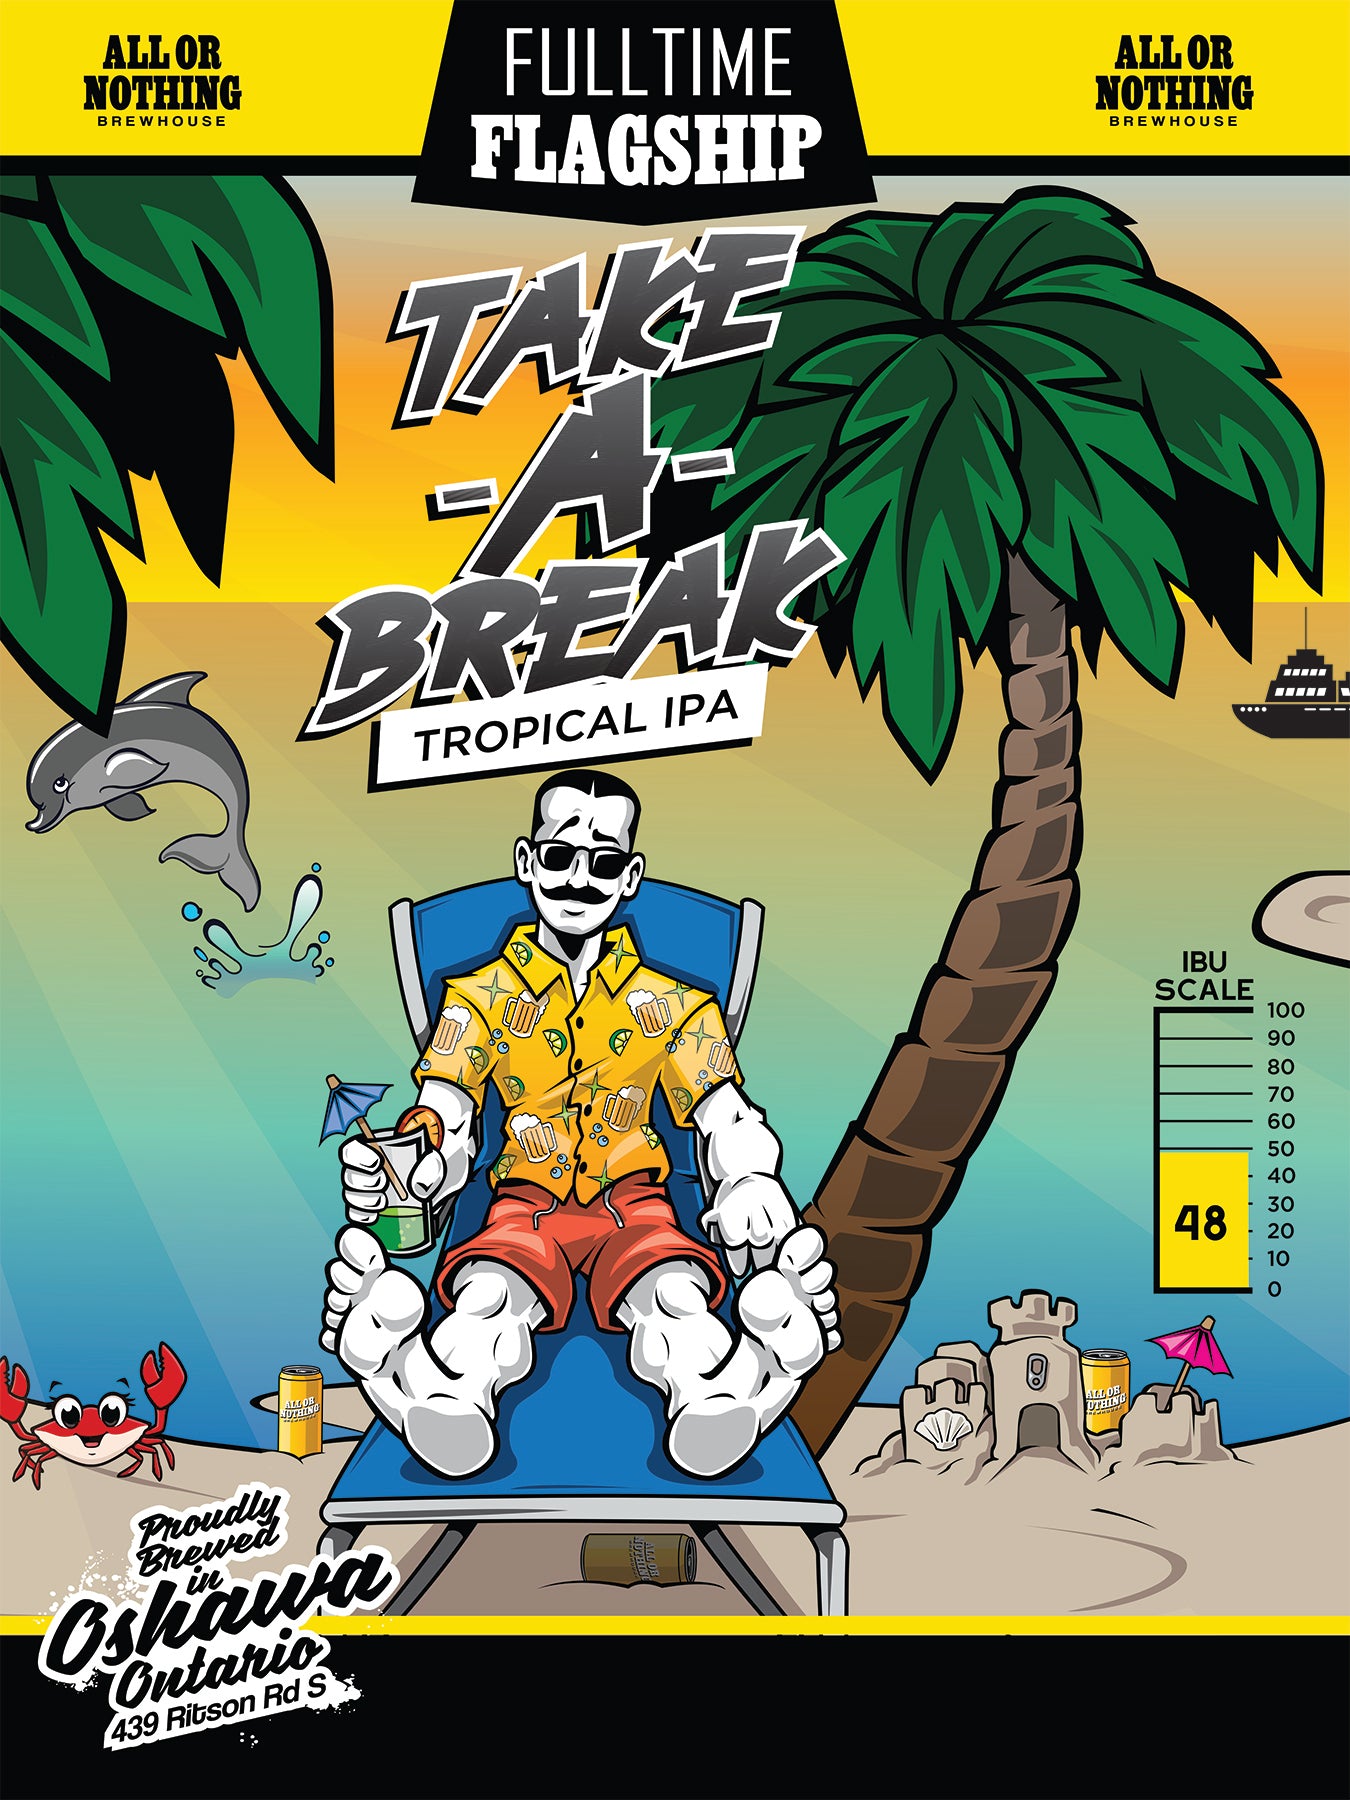 Take-A-Break